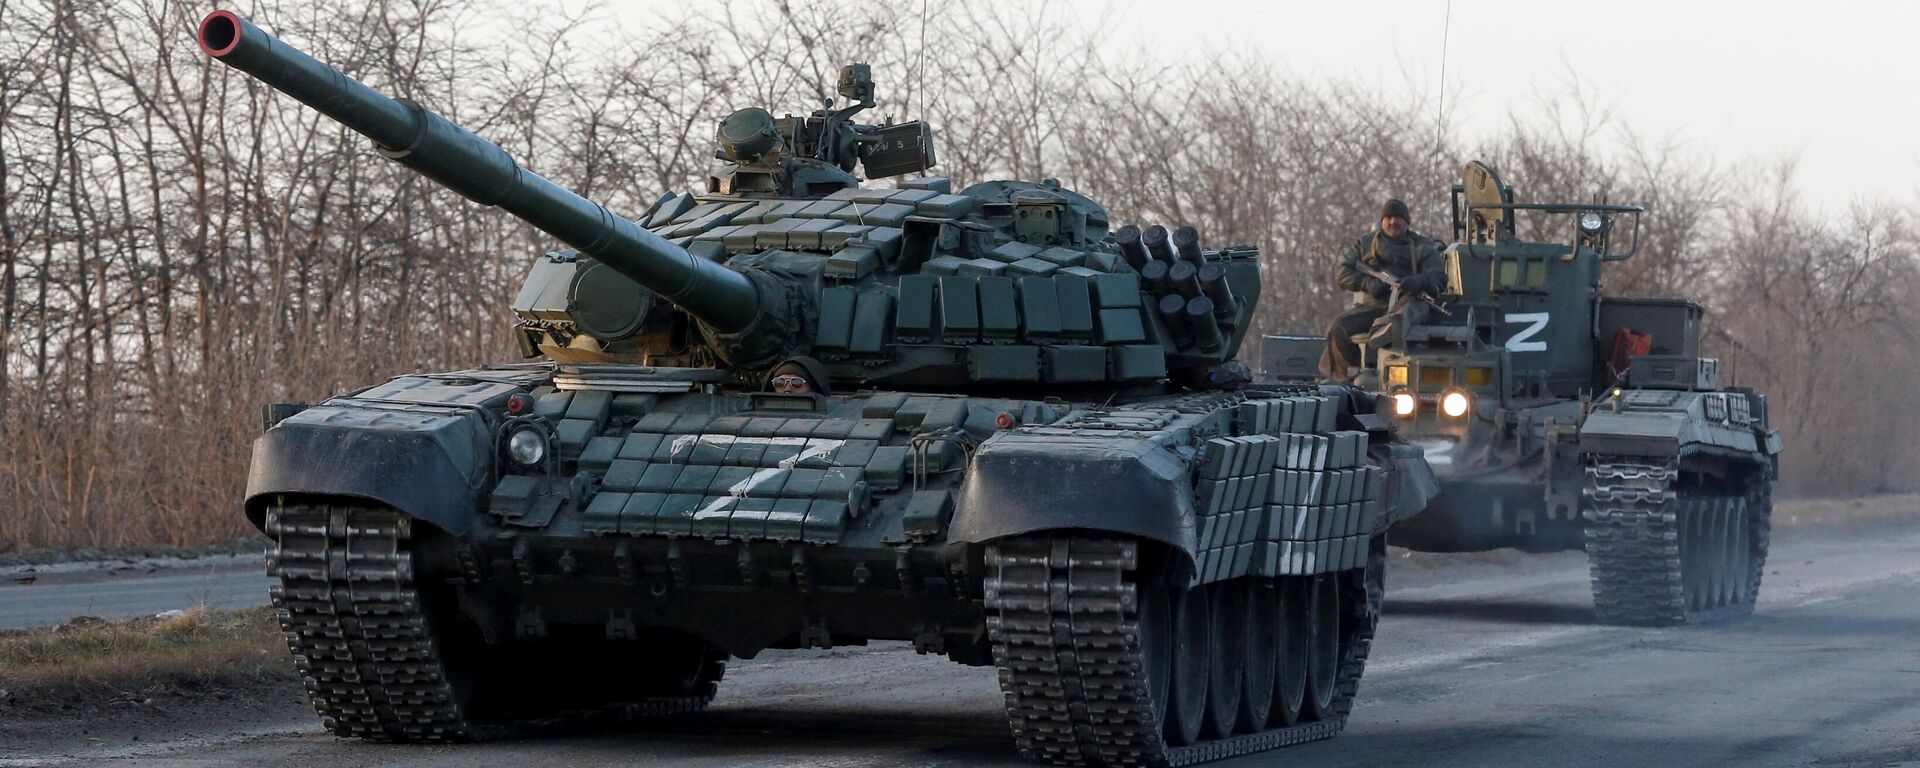 Membros do serviço de tropas pró-Rússia são vistos no topo de veículos blindados durante o conflito Ucrânia-Rússia em uma estrada que leva à cidade de Mariupol, Ucrânia, 28 de março de 2022 - Sputnik Brasil, 1920, 01.04.2022